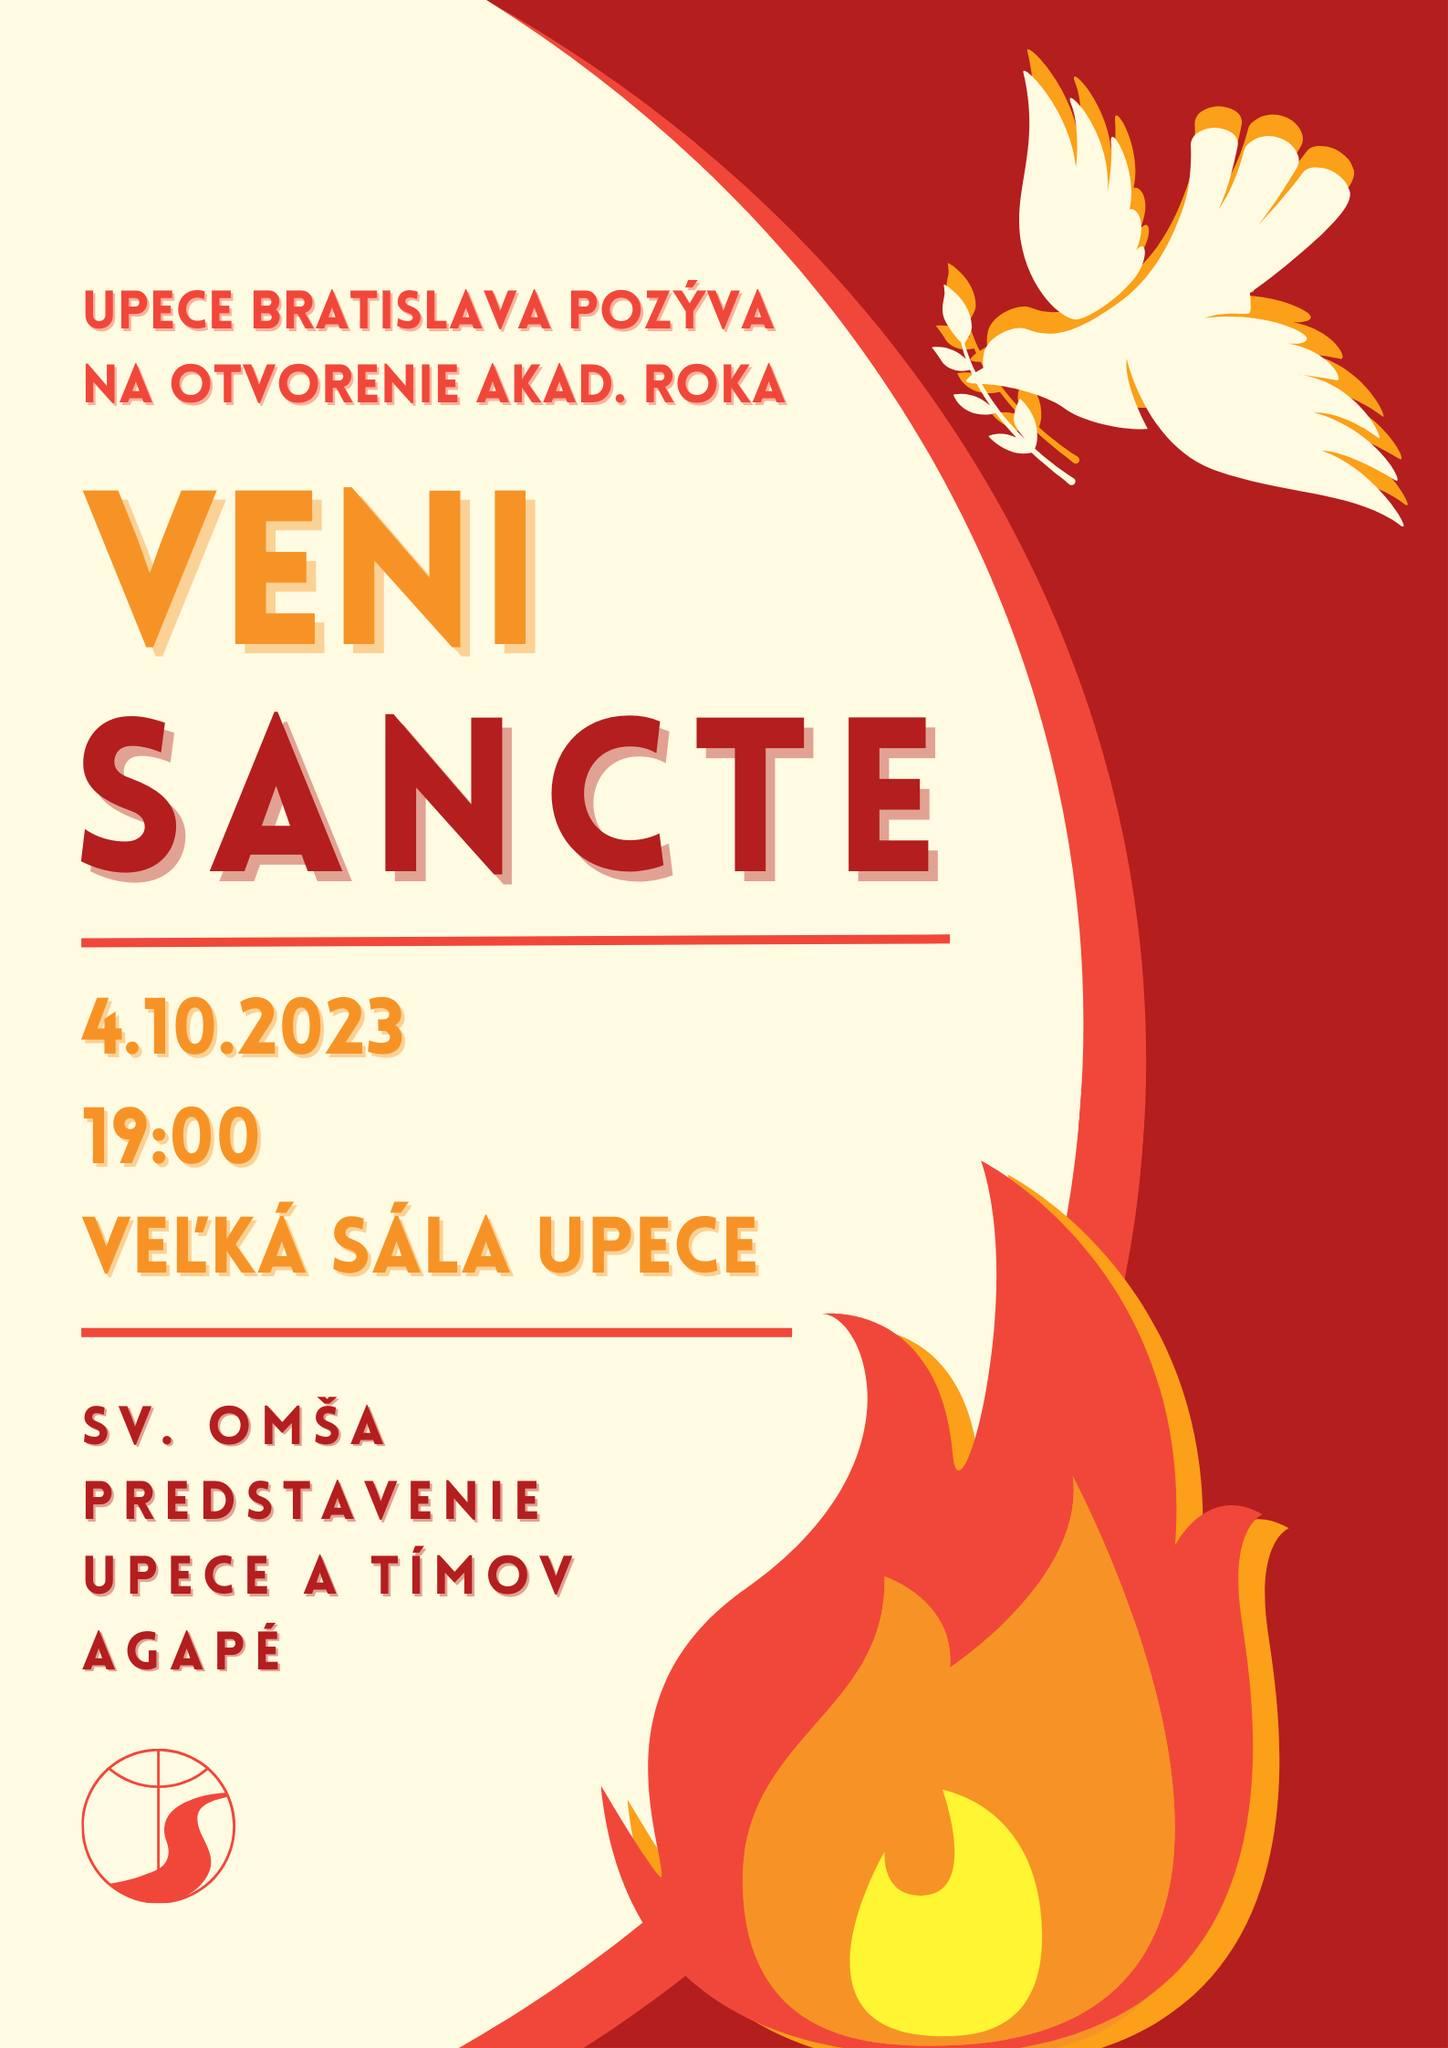 Bratislava, Veni Sancte, UPeCe, plagat